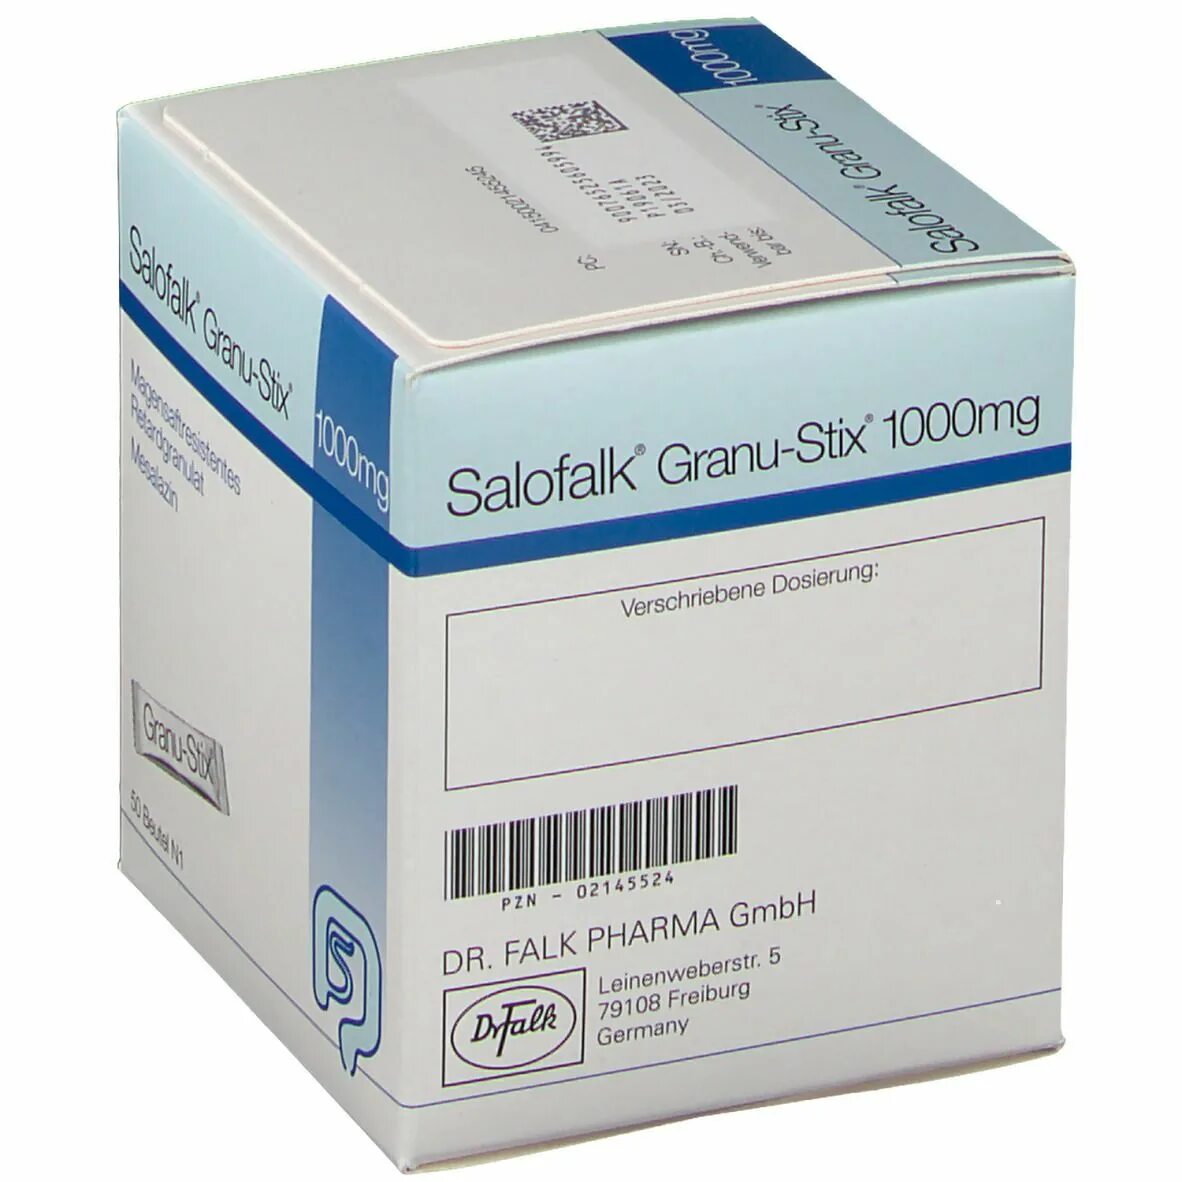 Salofalk 1000 MG. Salofalk Granu-Stix 500 мг. Salofalk Granu-Stix 1000mg. Salofalk 1000mg eu.